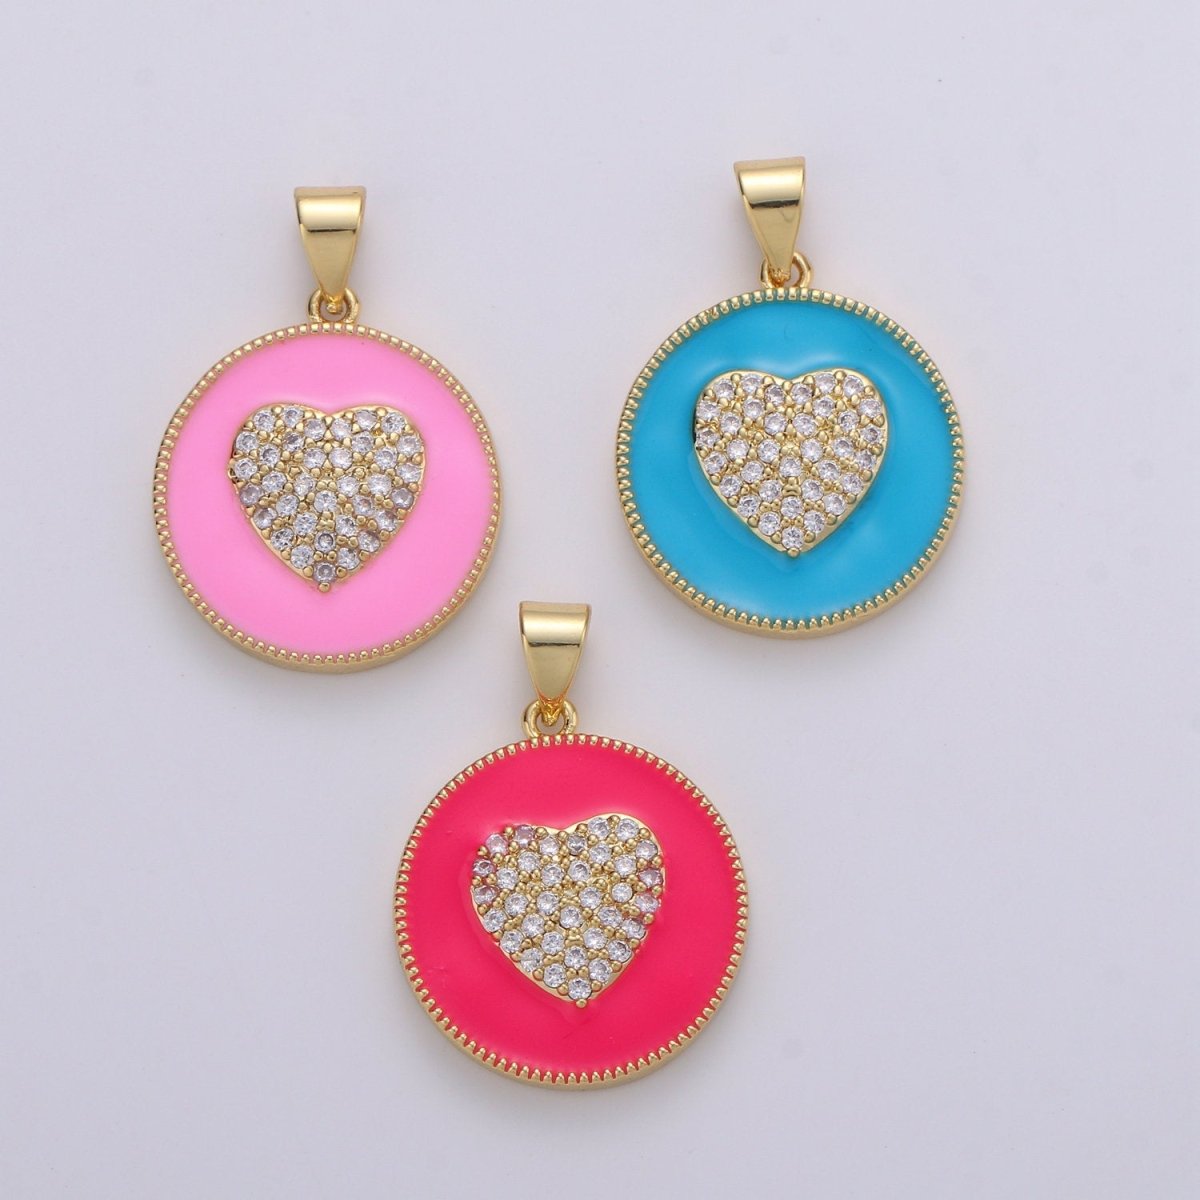 Micro Pave Pink Enamel Heart Charm Pendant, Enamel Heart Pendant, 14K gold Filled Heart Charm Blue Red Heart Pendant for Necklace Bracelet, J39/40/41 - DLUXCA